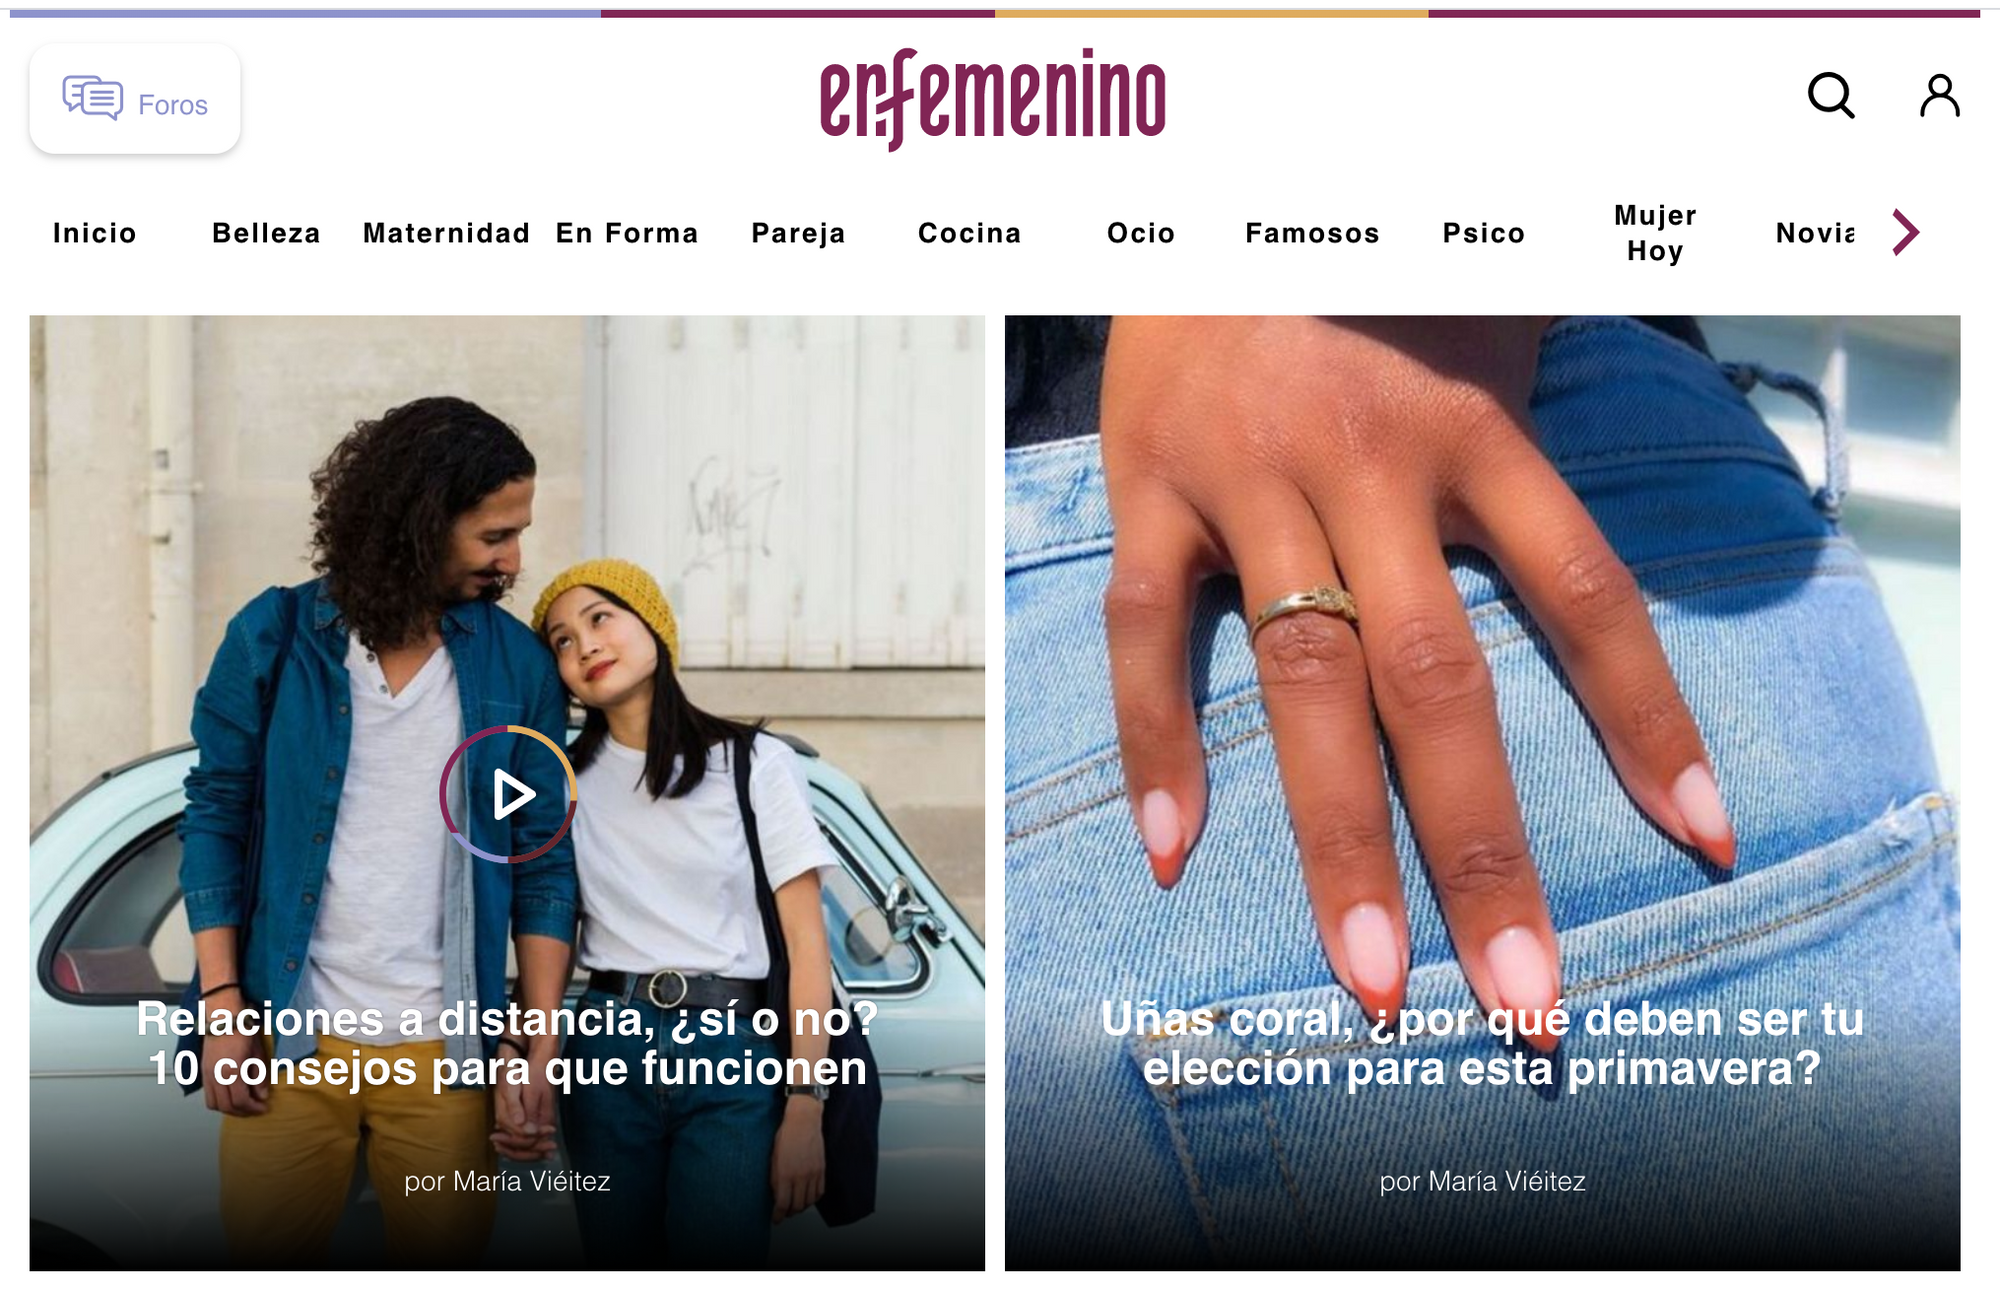 ENFEMENINO.COM, MARCH 5, 2013: ¡Mantener la línea es divertido! Los 10 deportes de moda de este año